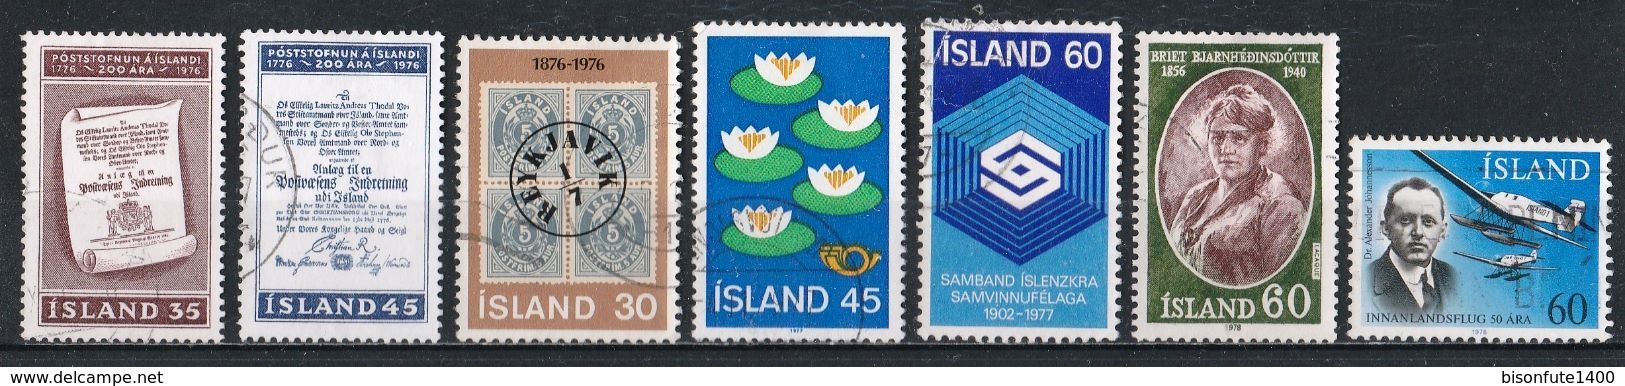 Petite collection de timbres ISLANDE oblitérés proposé au 1/10ème de la Cote Yvert & Tellier 2015 (voir les 29 photos)